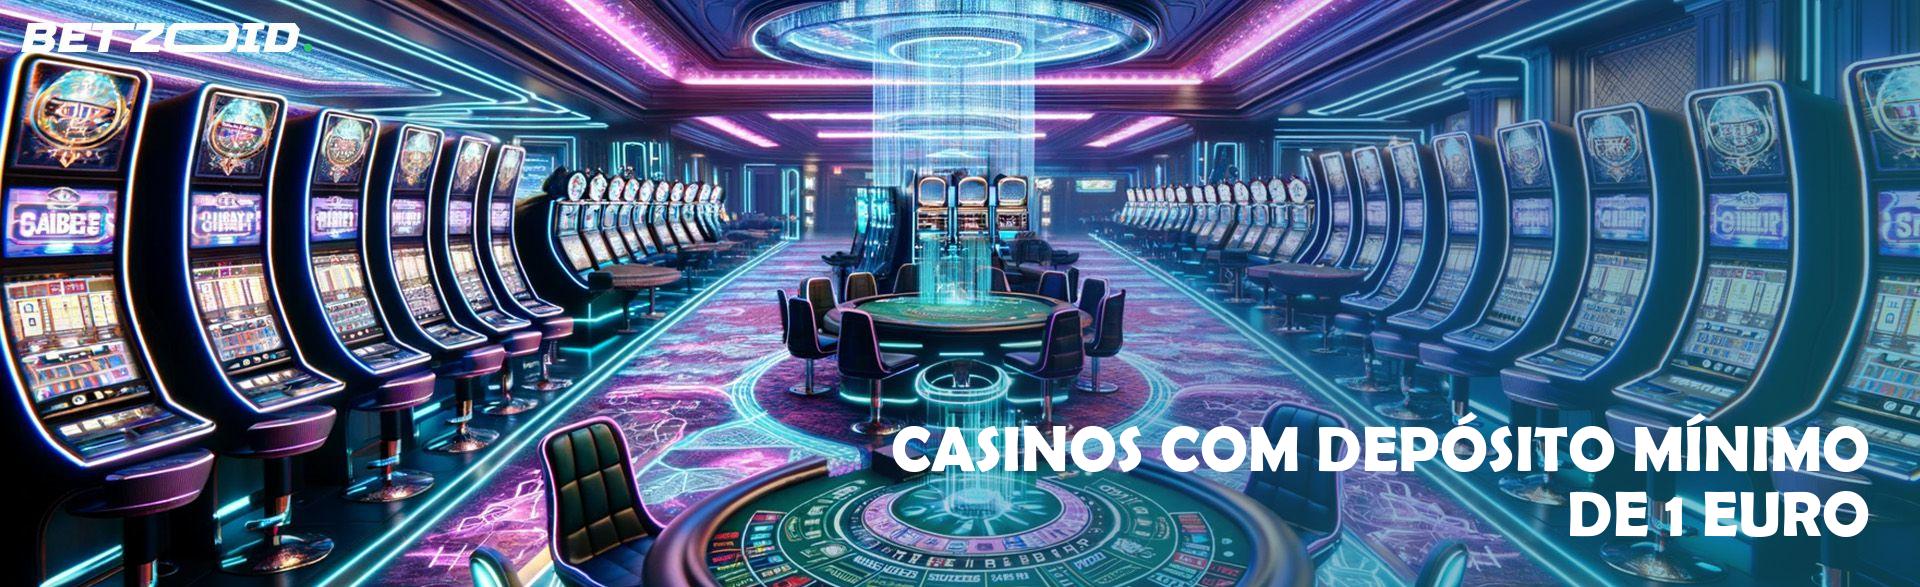 Casinos com Depósito Mínimo de 1 Euro.